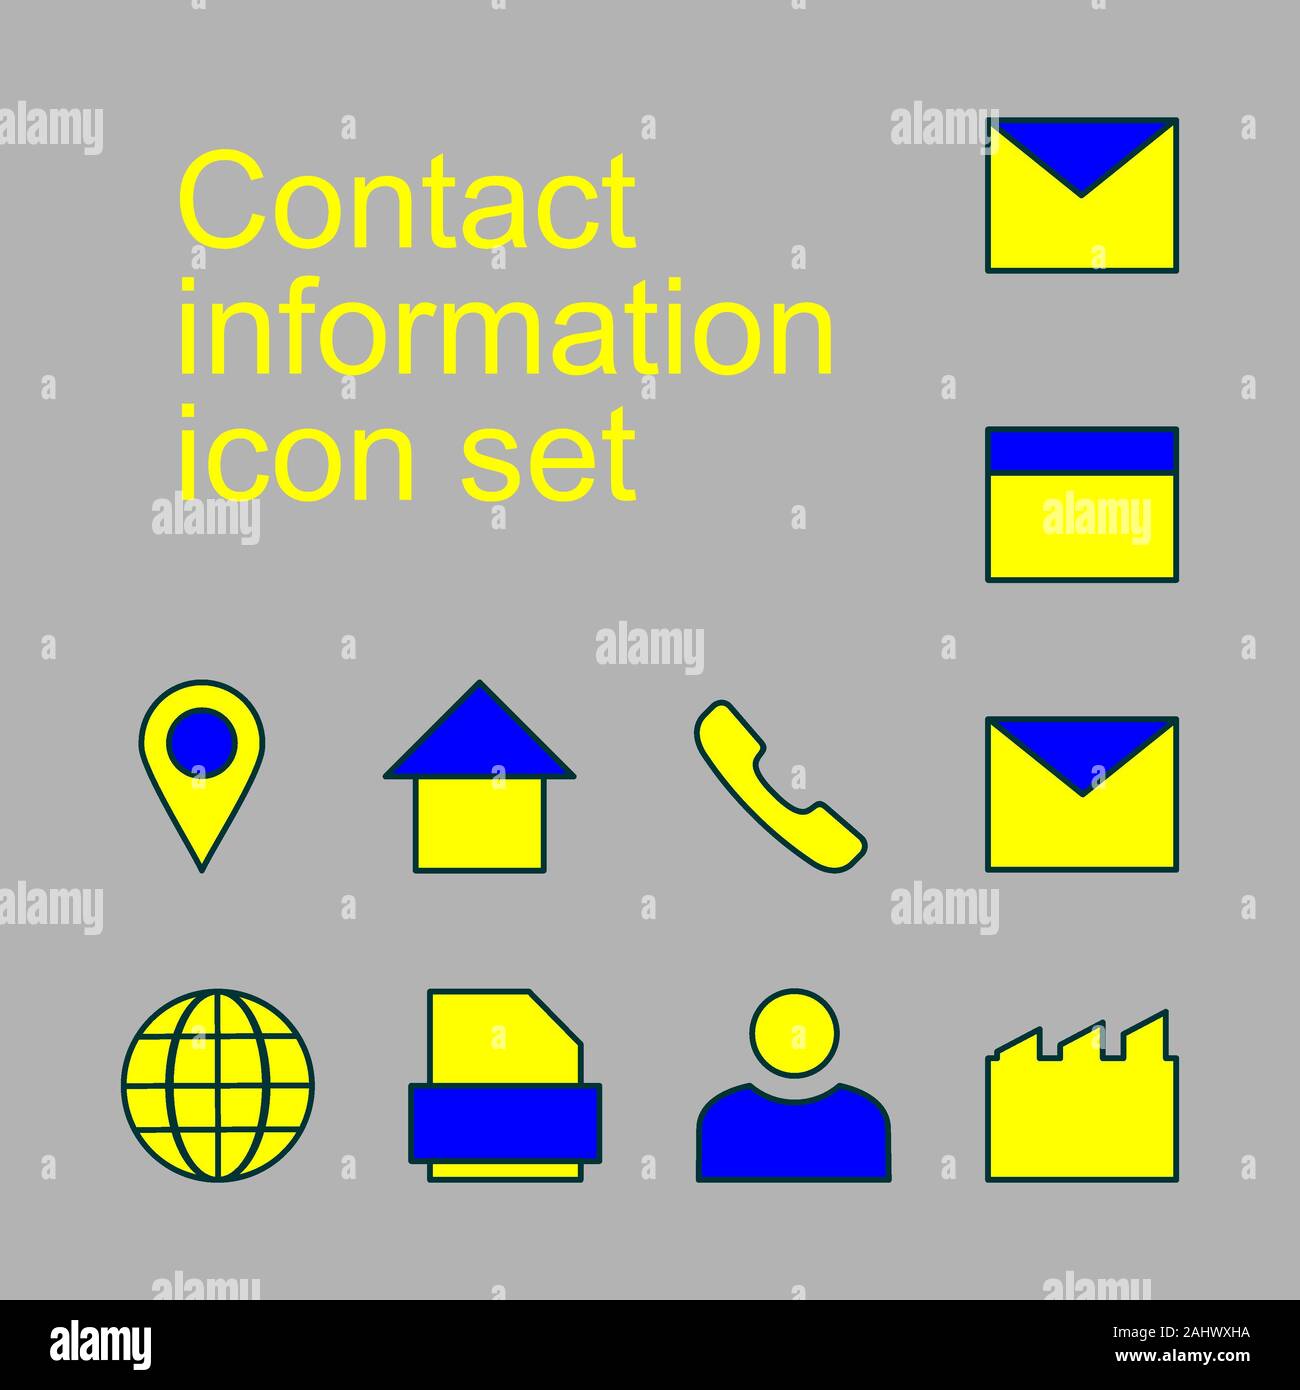 Un conjunto de iconos de información de contacto. Botones de icono de vector set. comunicación colección de símbolos, dibujos vectoriales. Correo electrónico, dirección, domicilio, teléfono, usuario, tel. Foto de stock